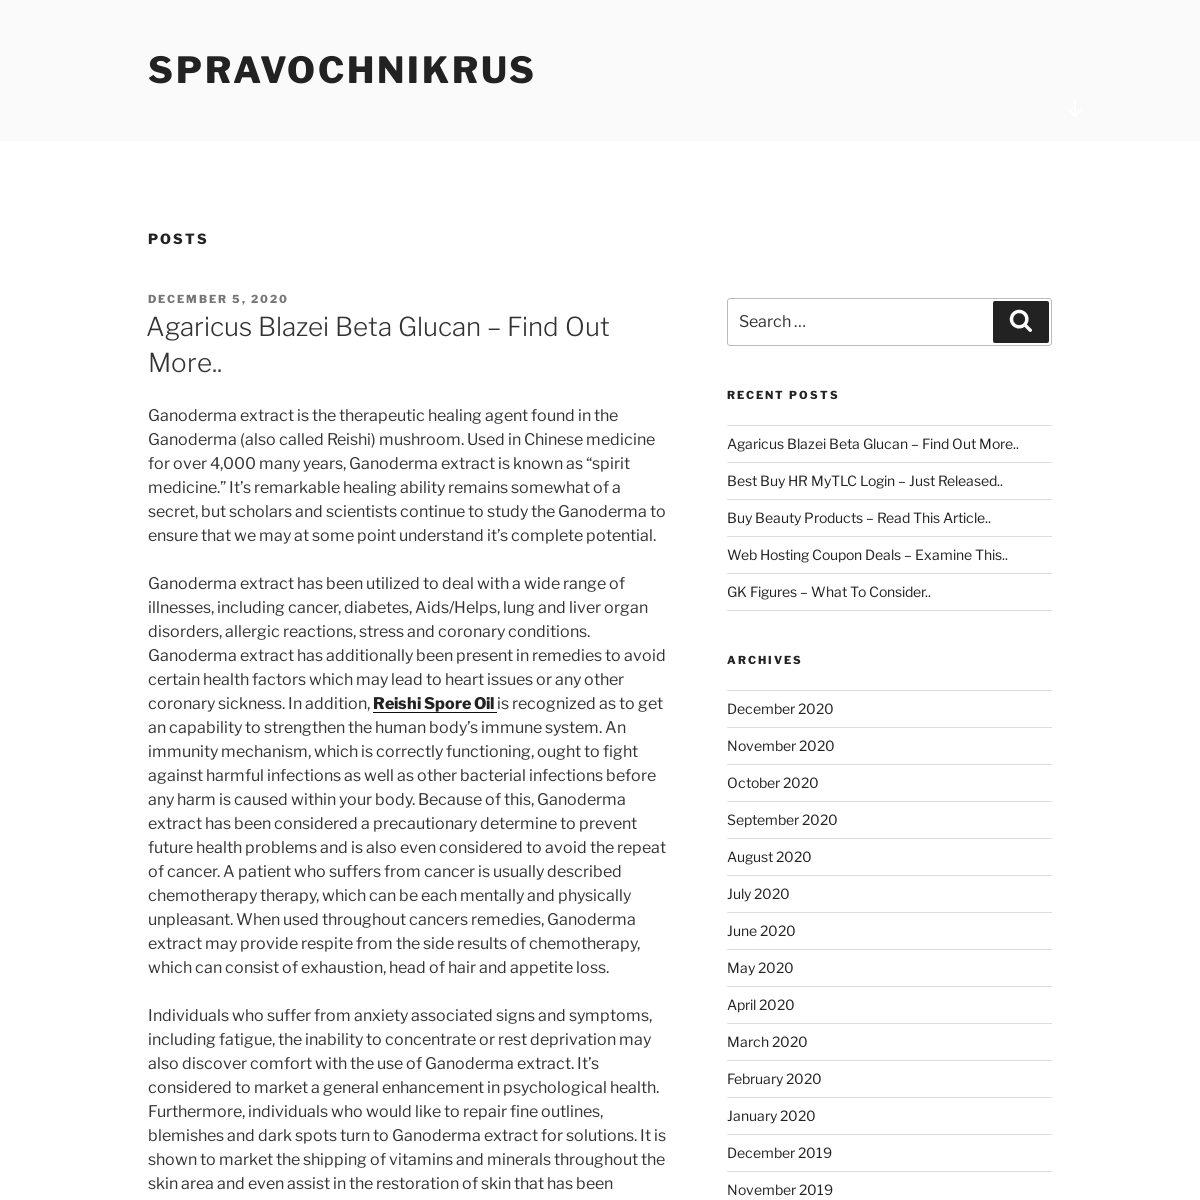 A complete backup of spravochnikrus.com